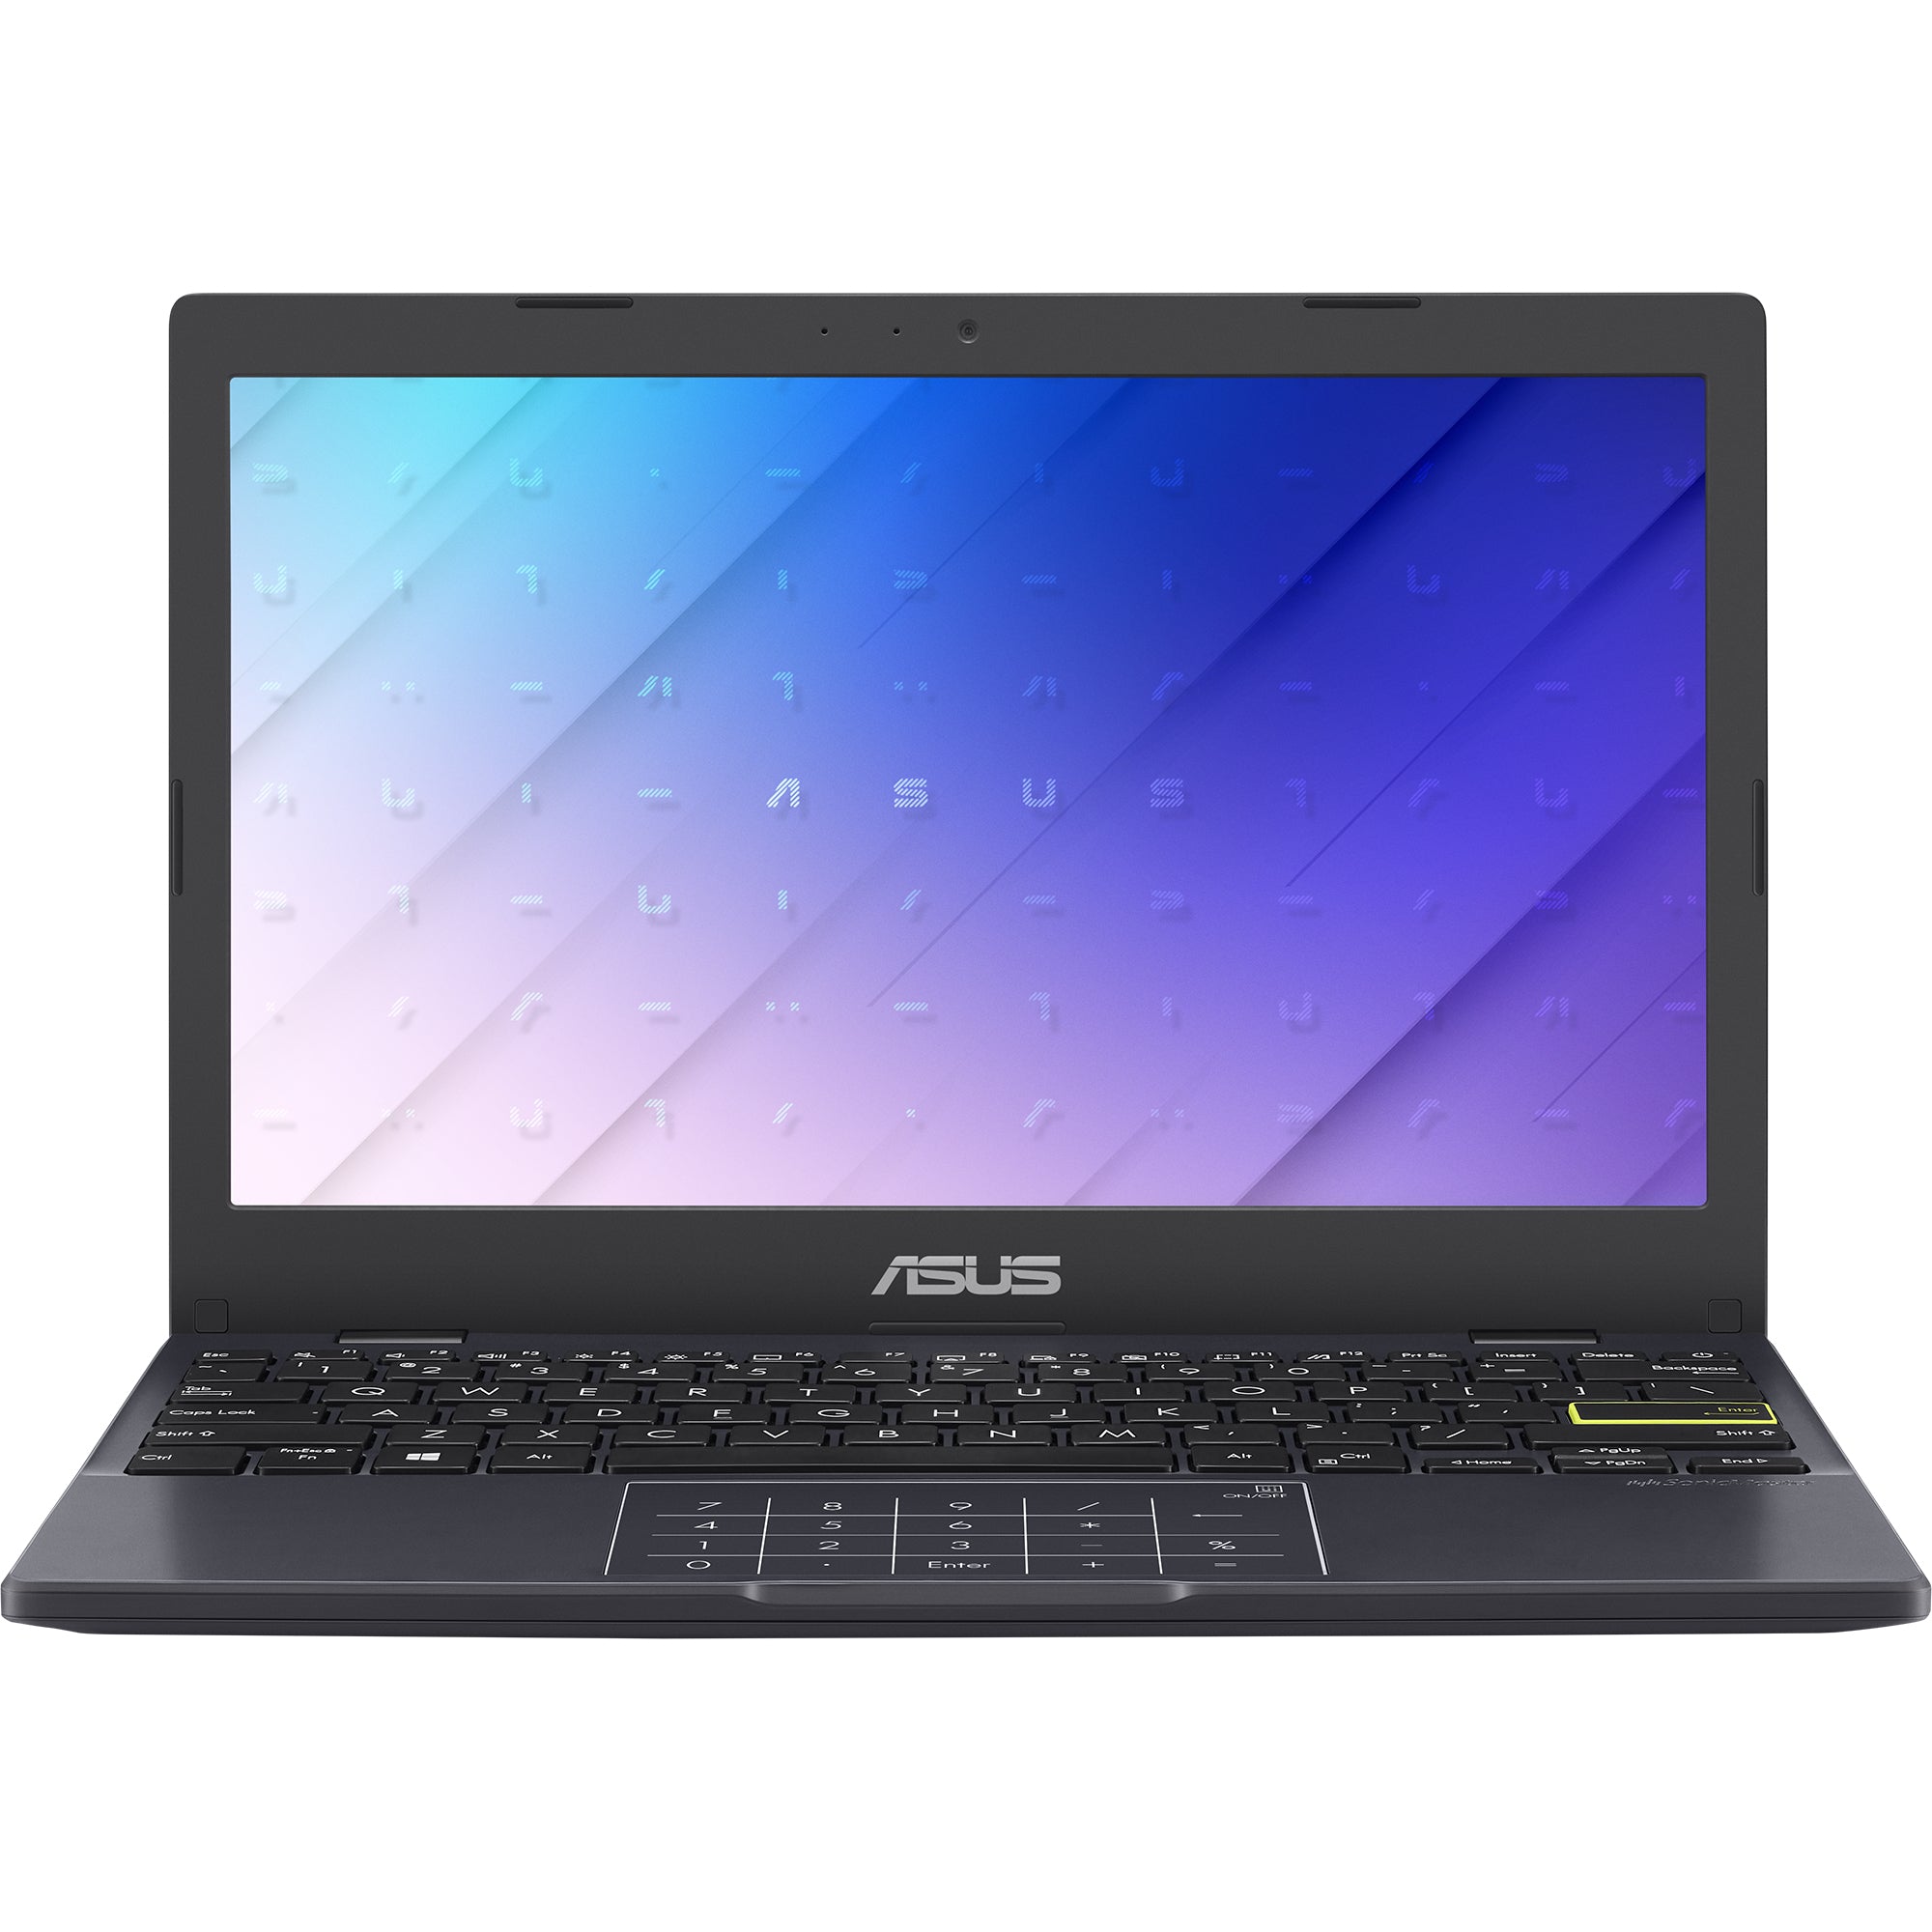 ASUS E210Ma-Gj181Ws Notebook 29.5 cm (11.6